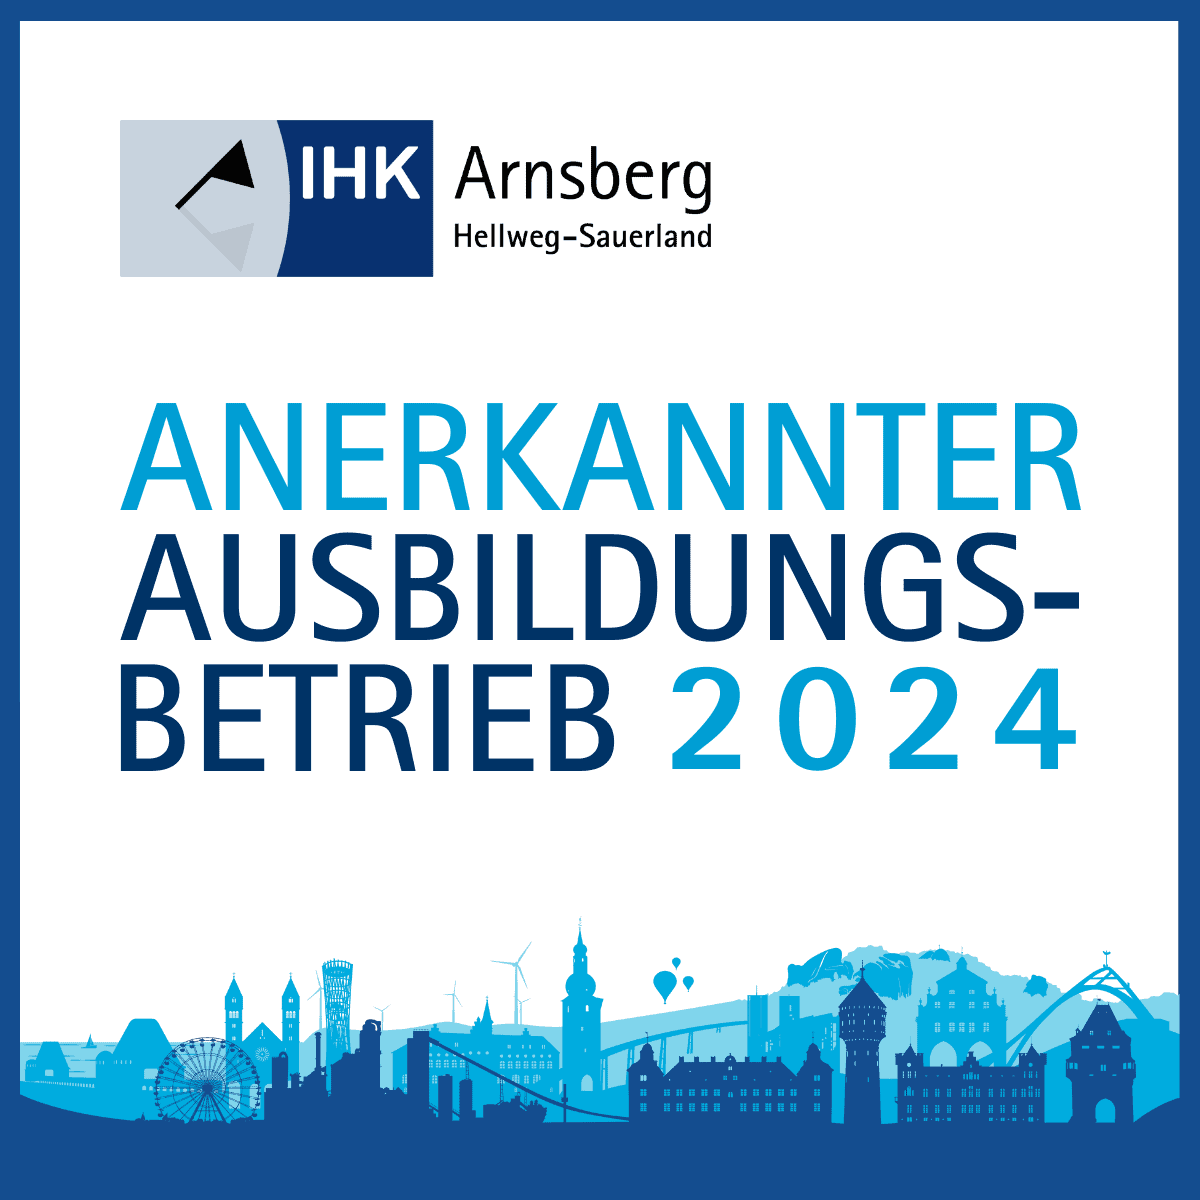 Anerkannter Ausbildungsbetrieb 2024 IHK Arnsberg